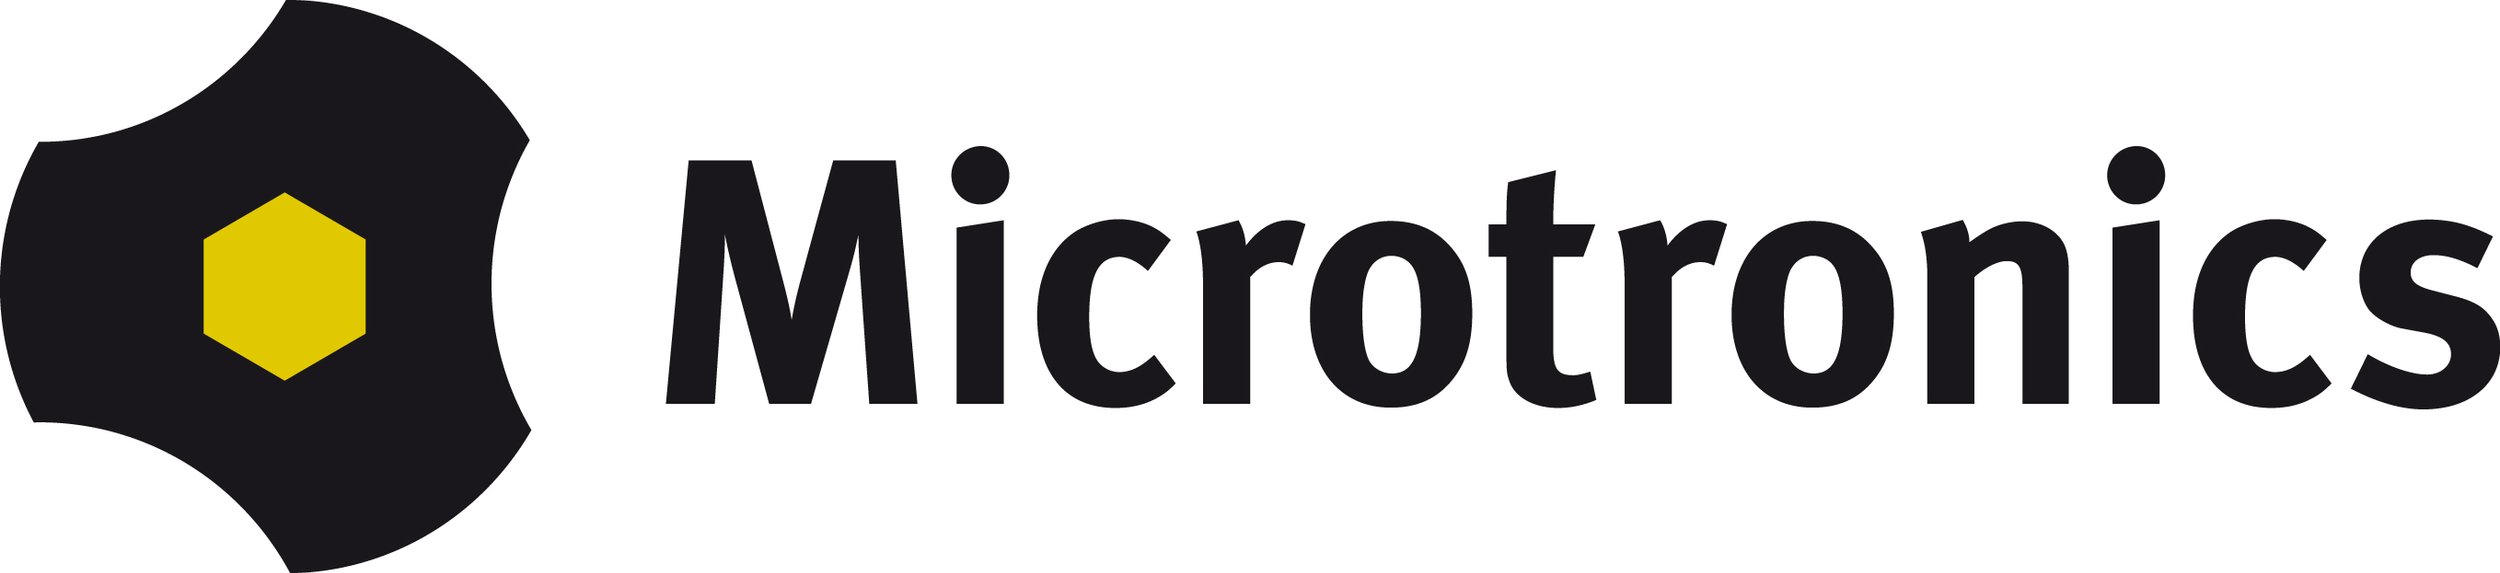 Microtronics (Copy)